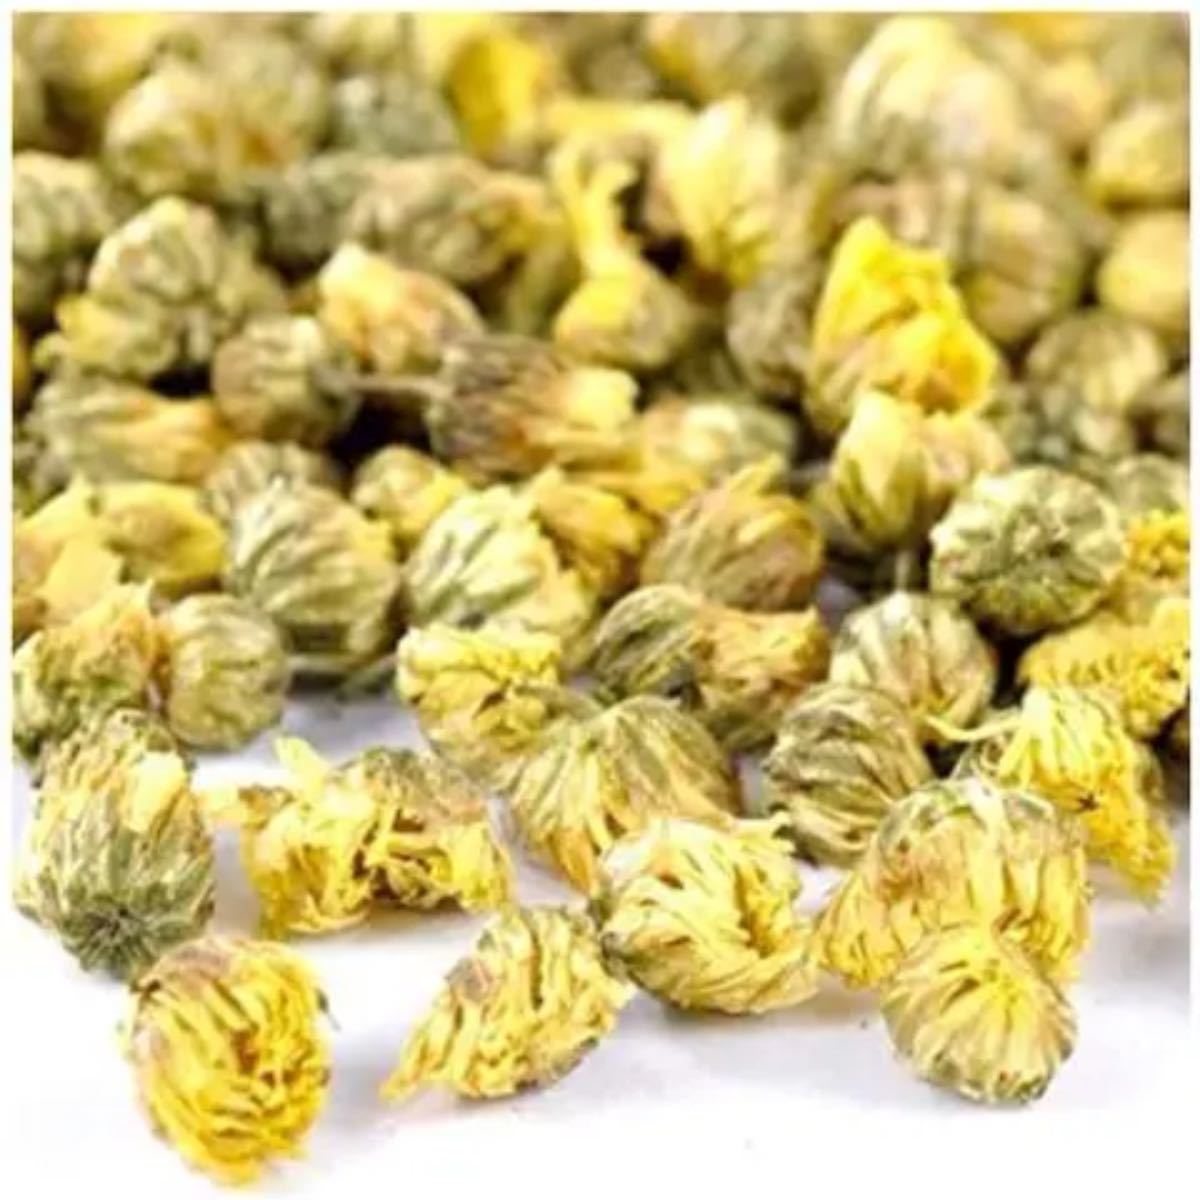 200g chrysanthemum tea菊の茶 胎菊花 チャック袋入り